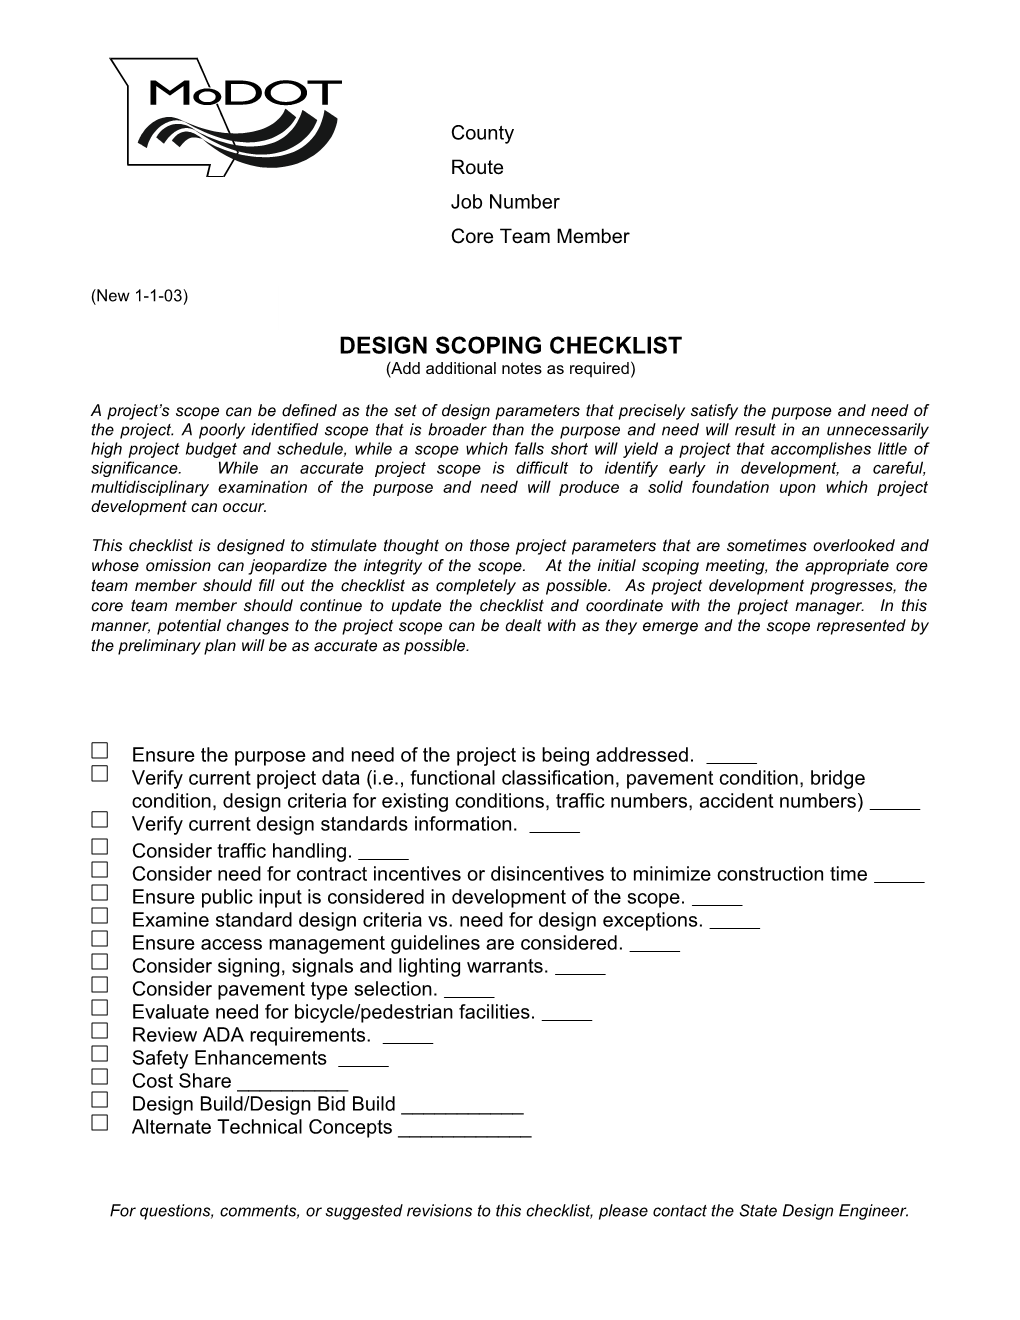 Design Scoping Checklist